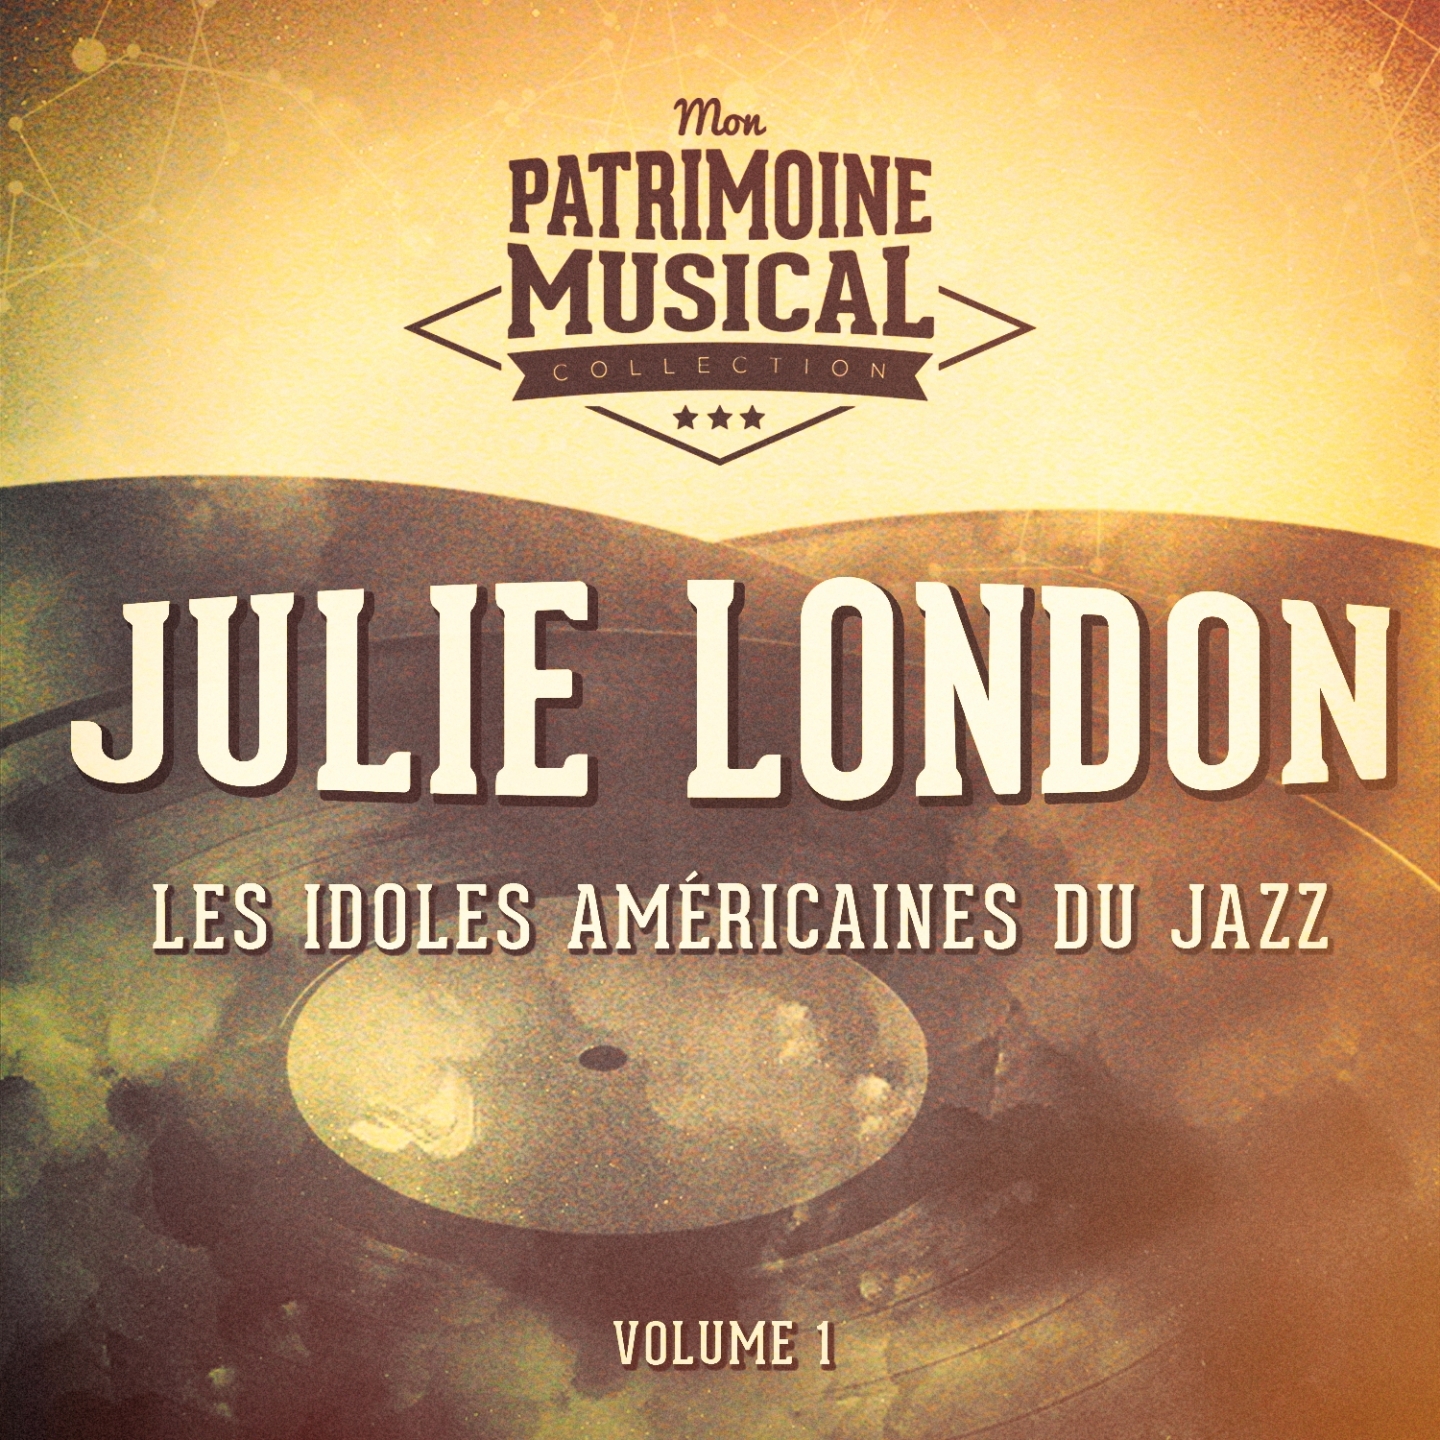 Les Idoles Ame ricaines Du Jazz: Julie London, Vol. 1